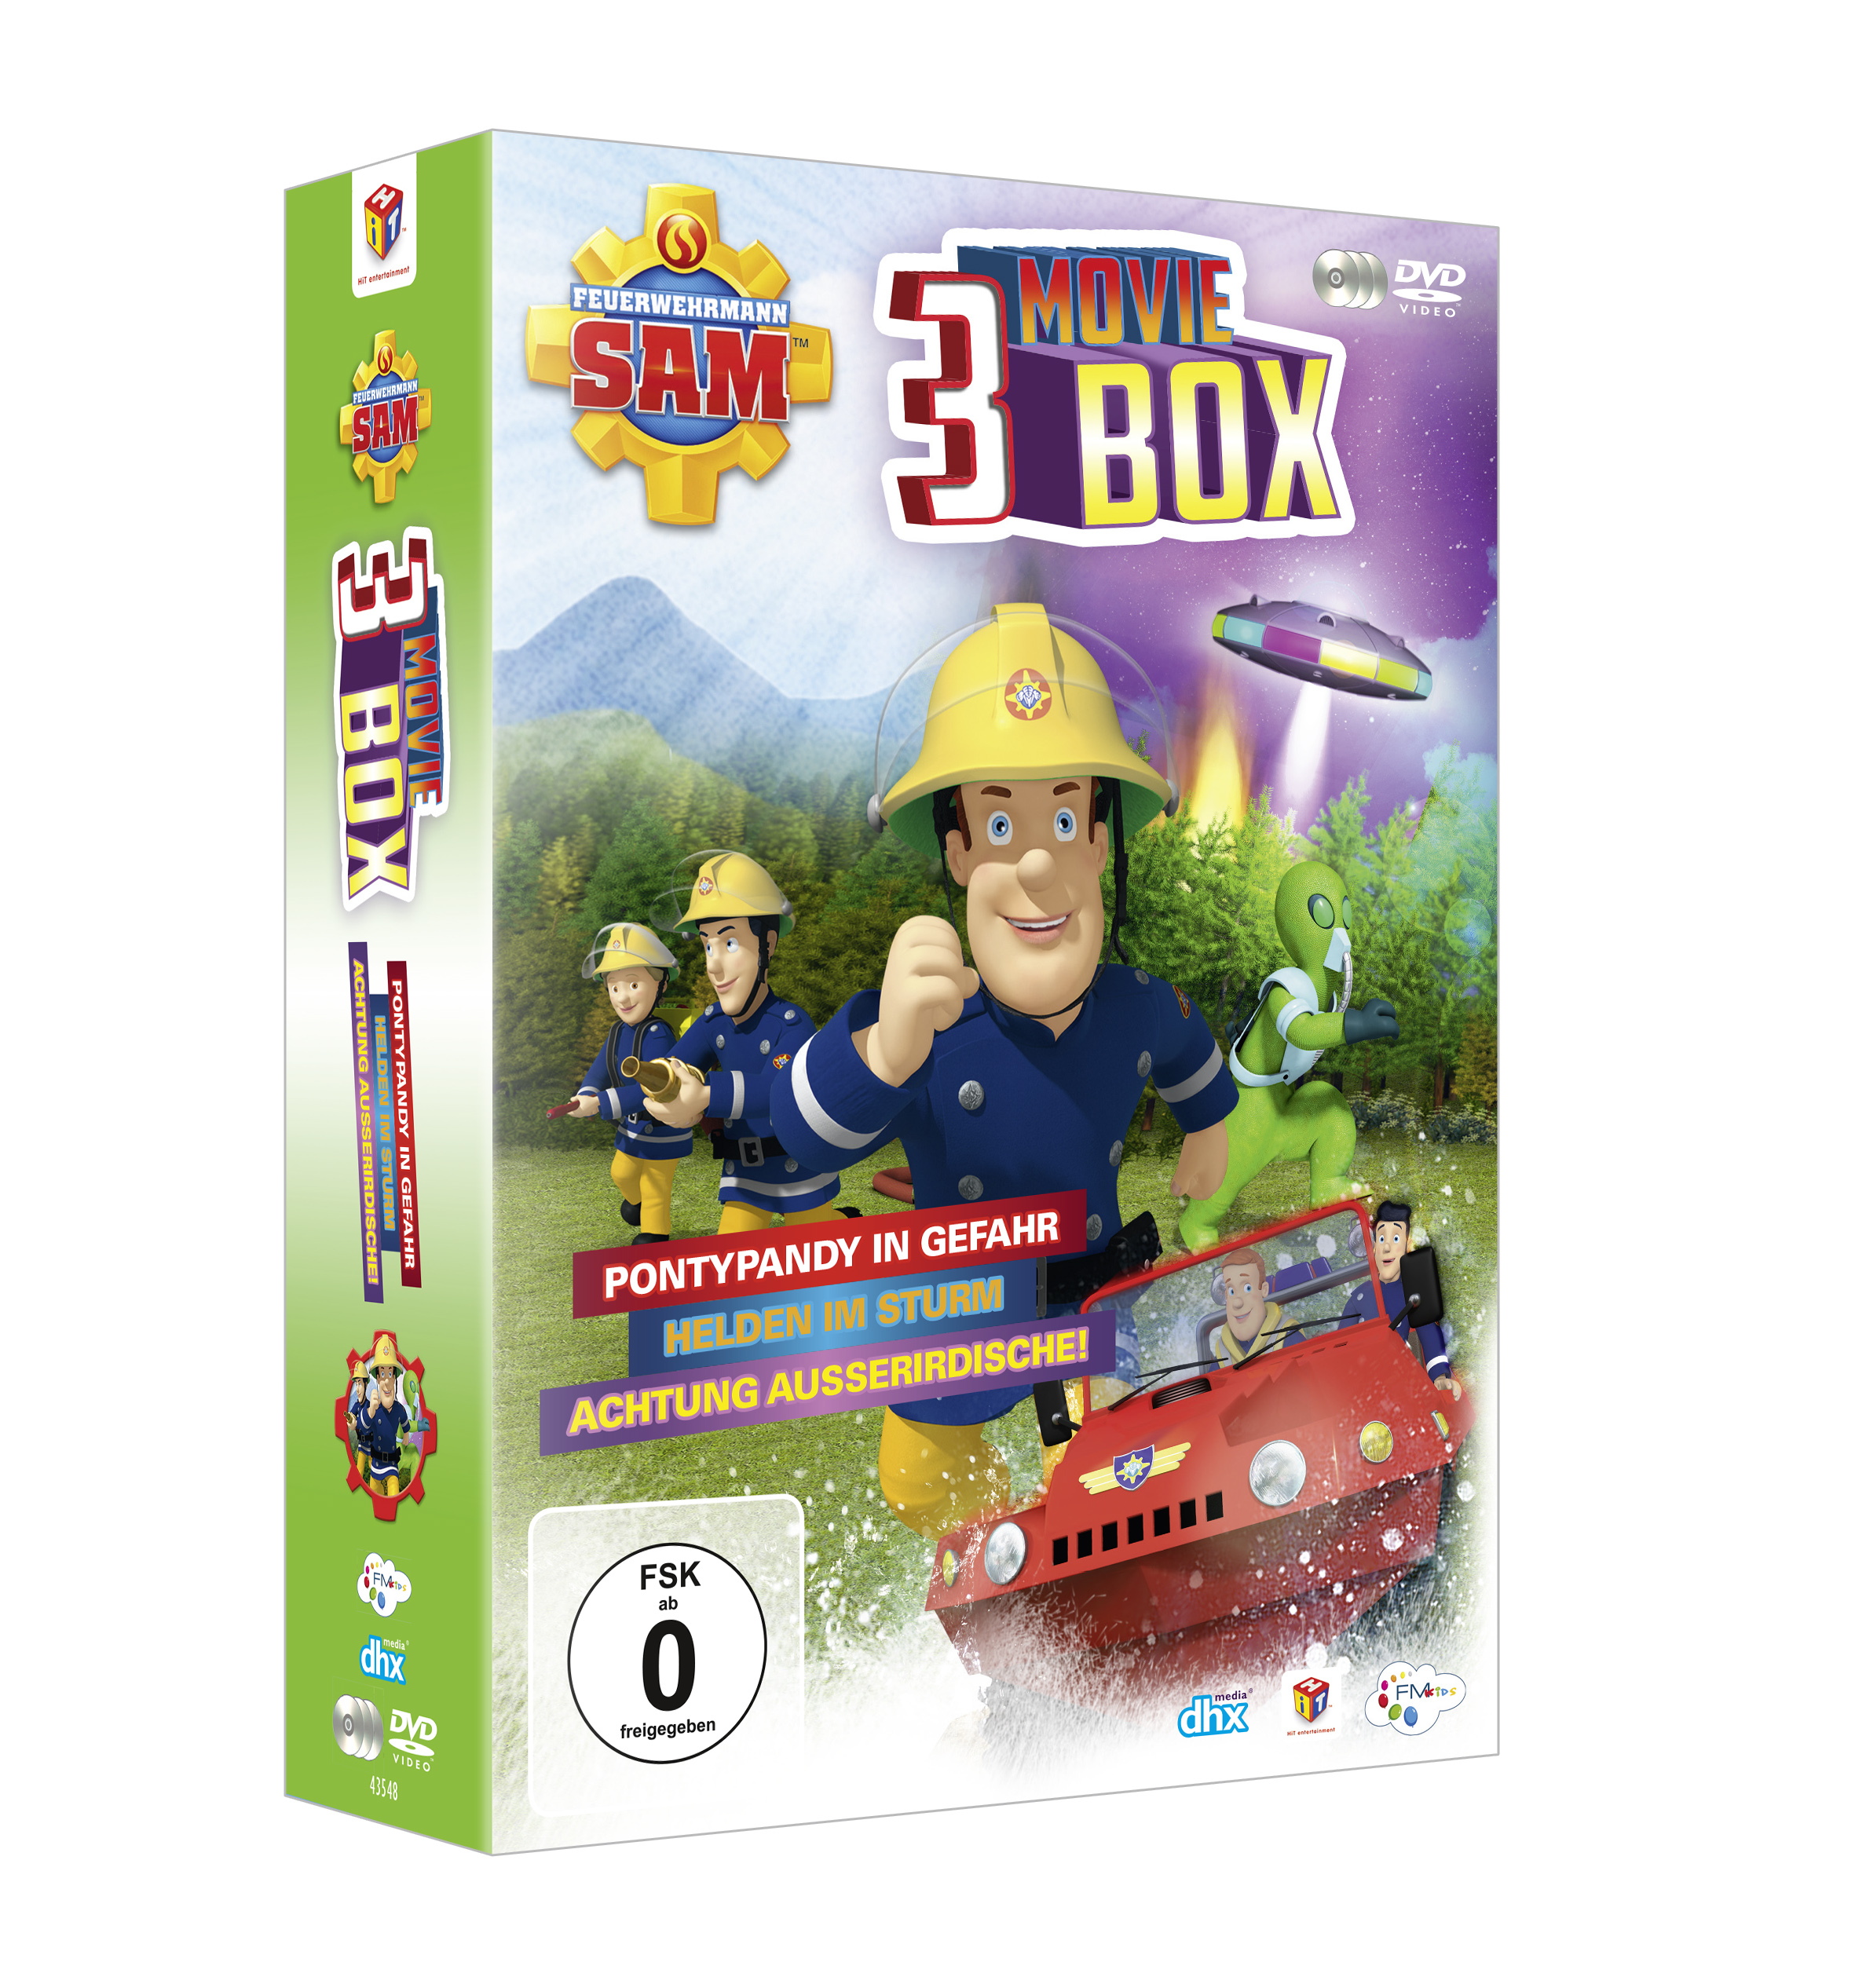 3 (Ltd.) Feuerwehrmann DVD Moviebox Sam